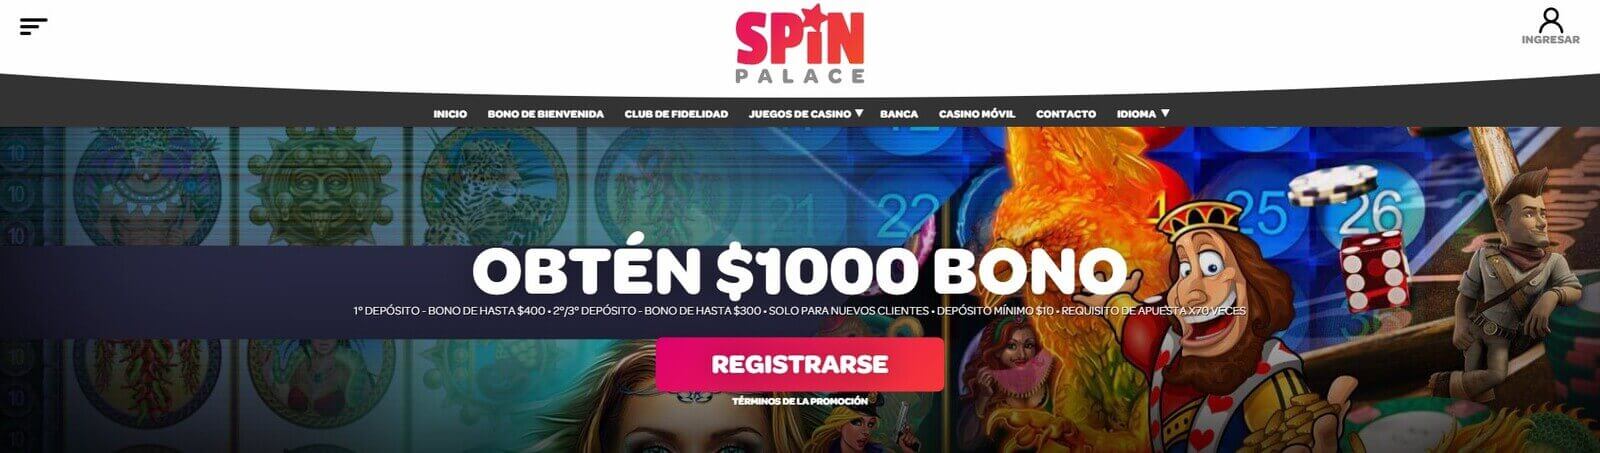 Juegos de mesa de SpinPalace Casino